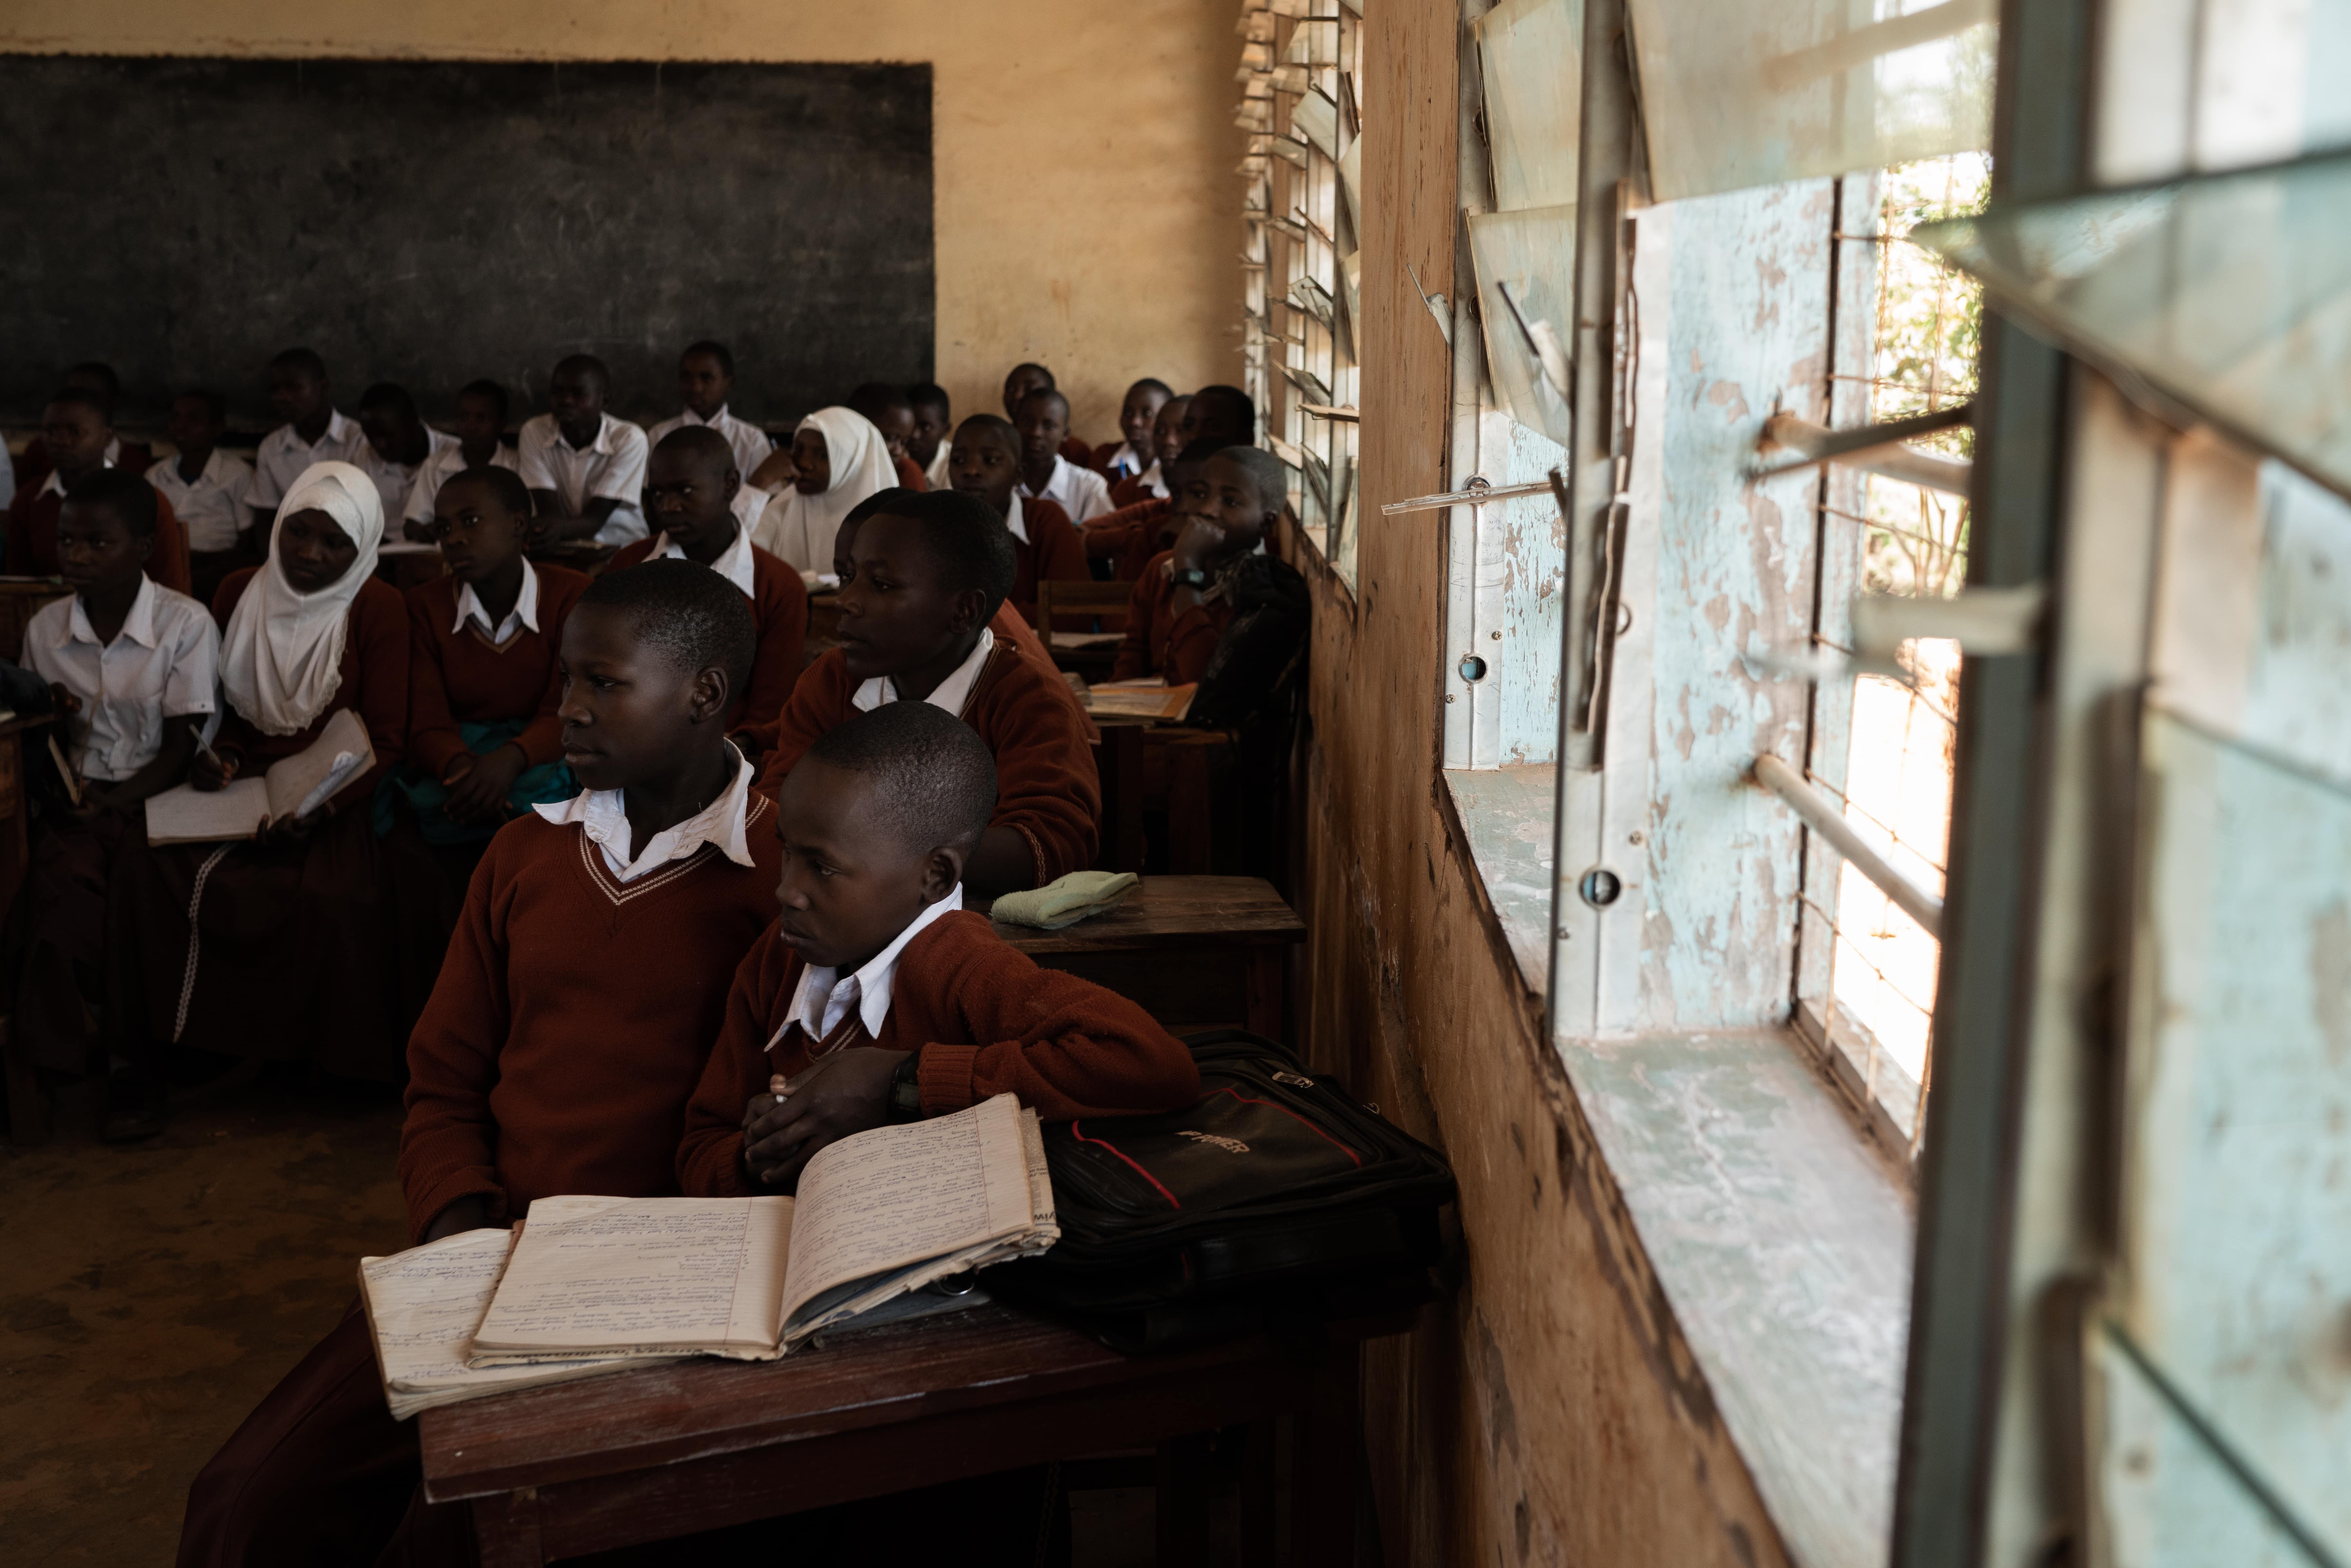 Amos William Sentabo 村校校長說：「學校需要更多資源，包括基建及老師。」村民正向政府跟進有關問題，希望村內的教育服務在短期內有所提升。